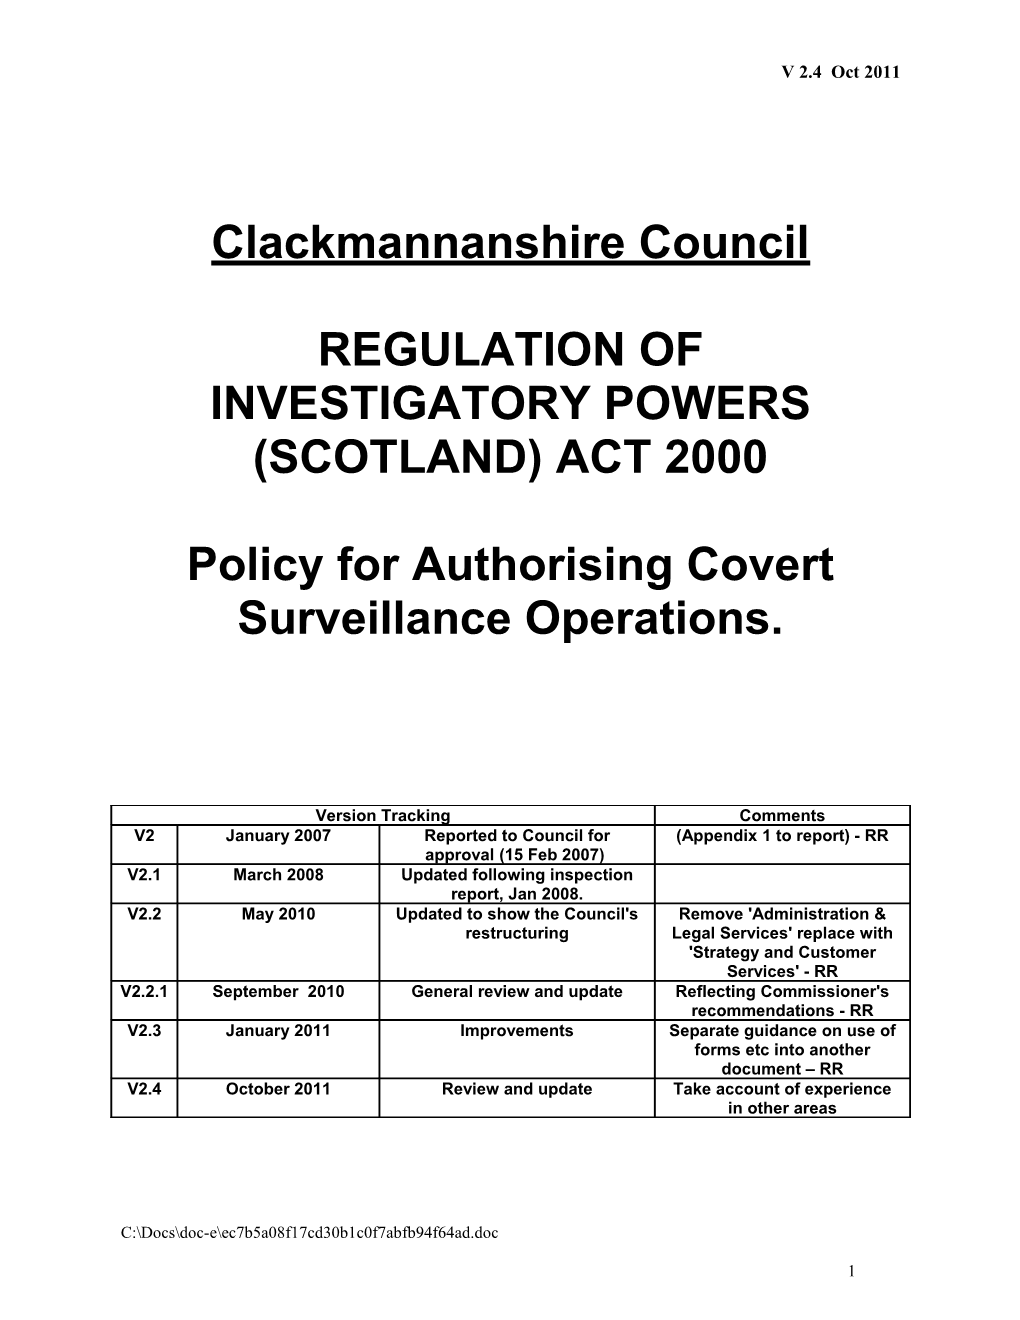 Regulation of Investigatory Powers (Scotland) Act 2000